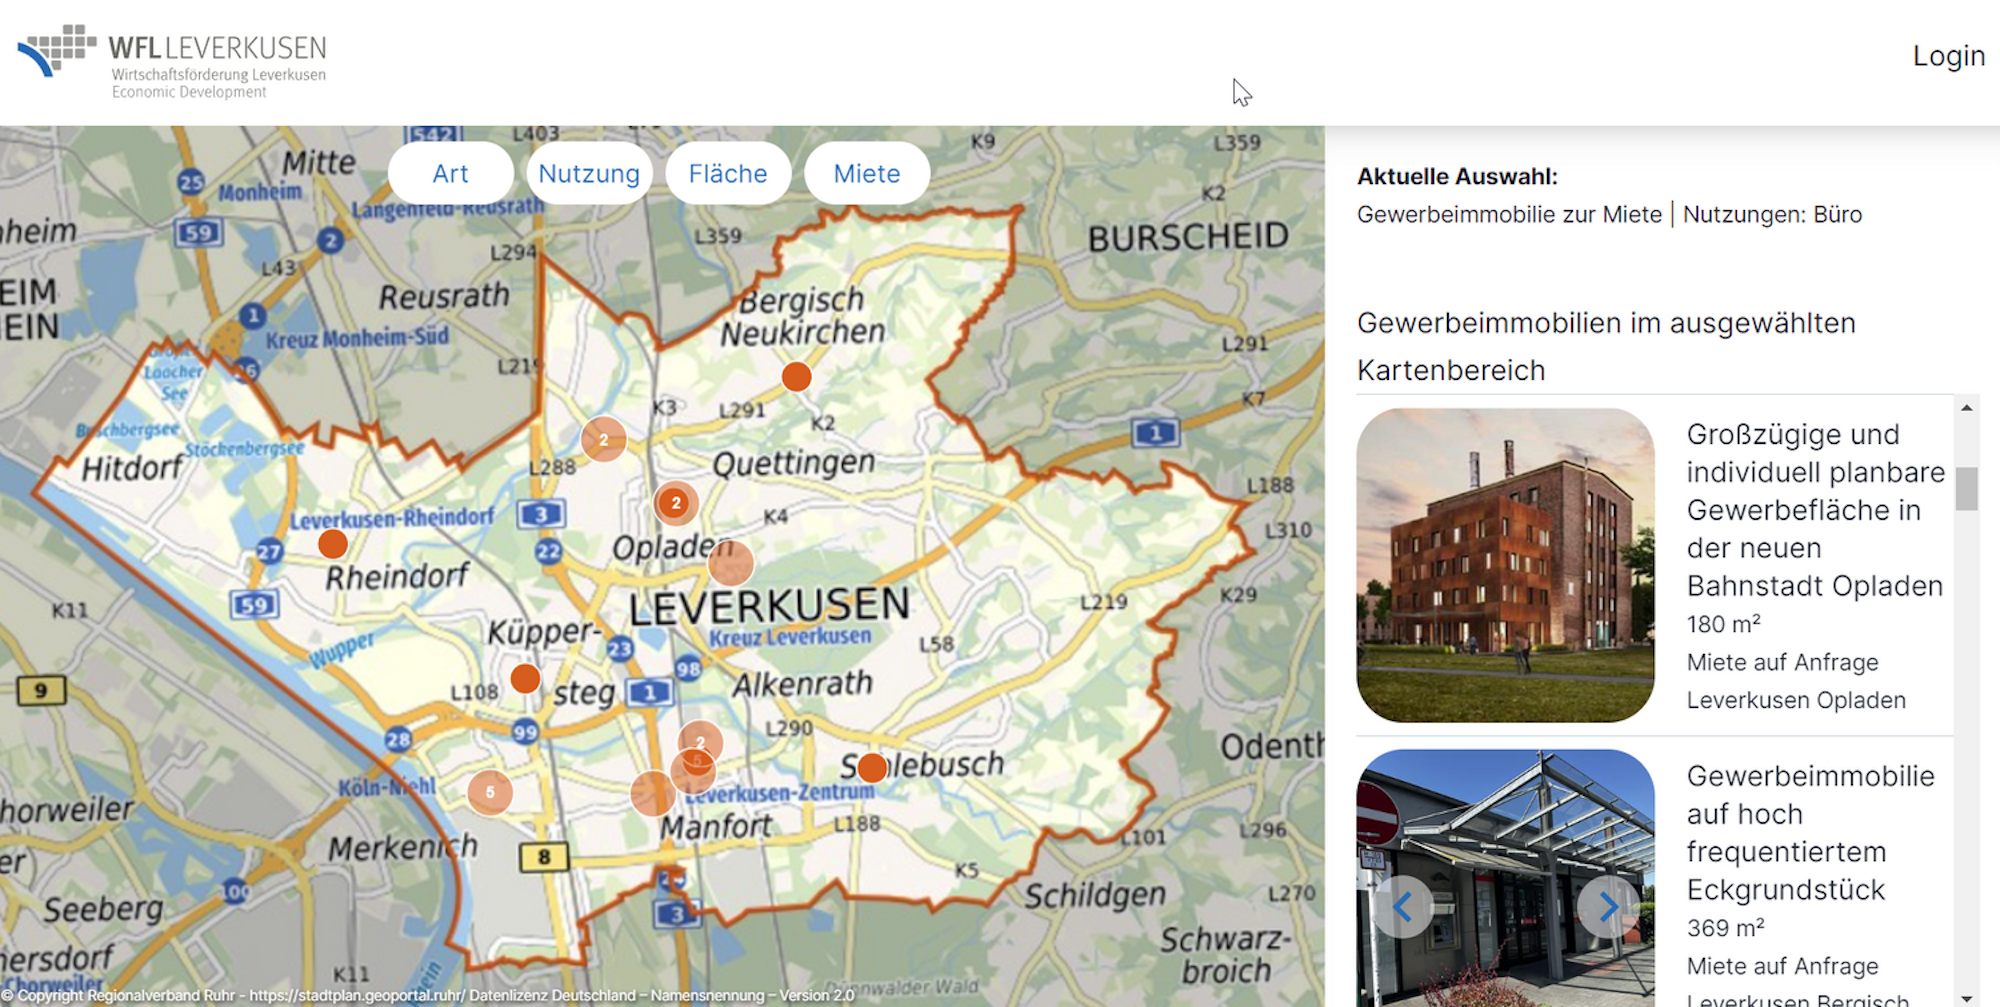 erfügbare Immobilien werden im neuen Standortportal der Wirtschaftsförderung Leverkusen auf der Karte und im Bild angezeigt.